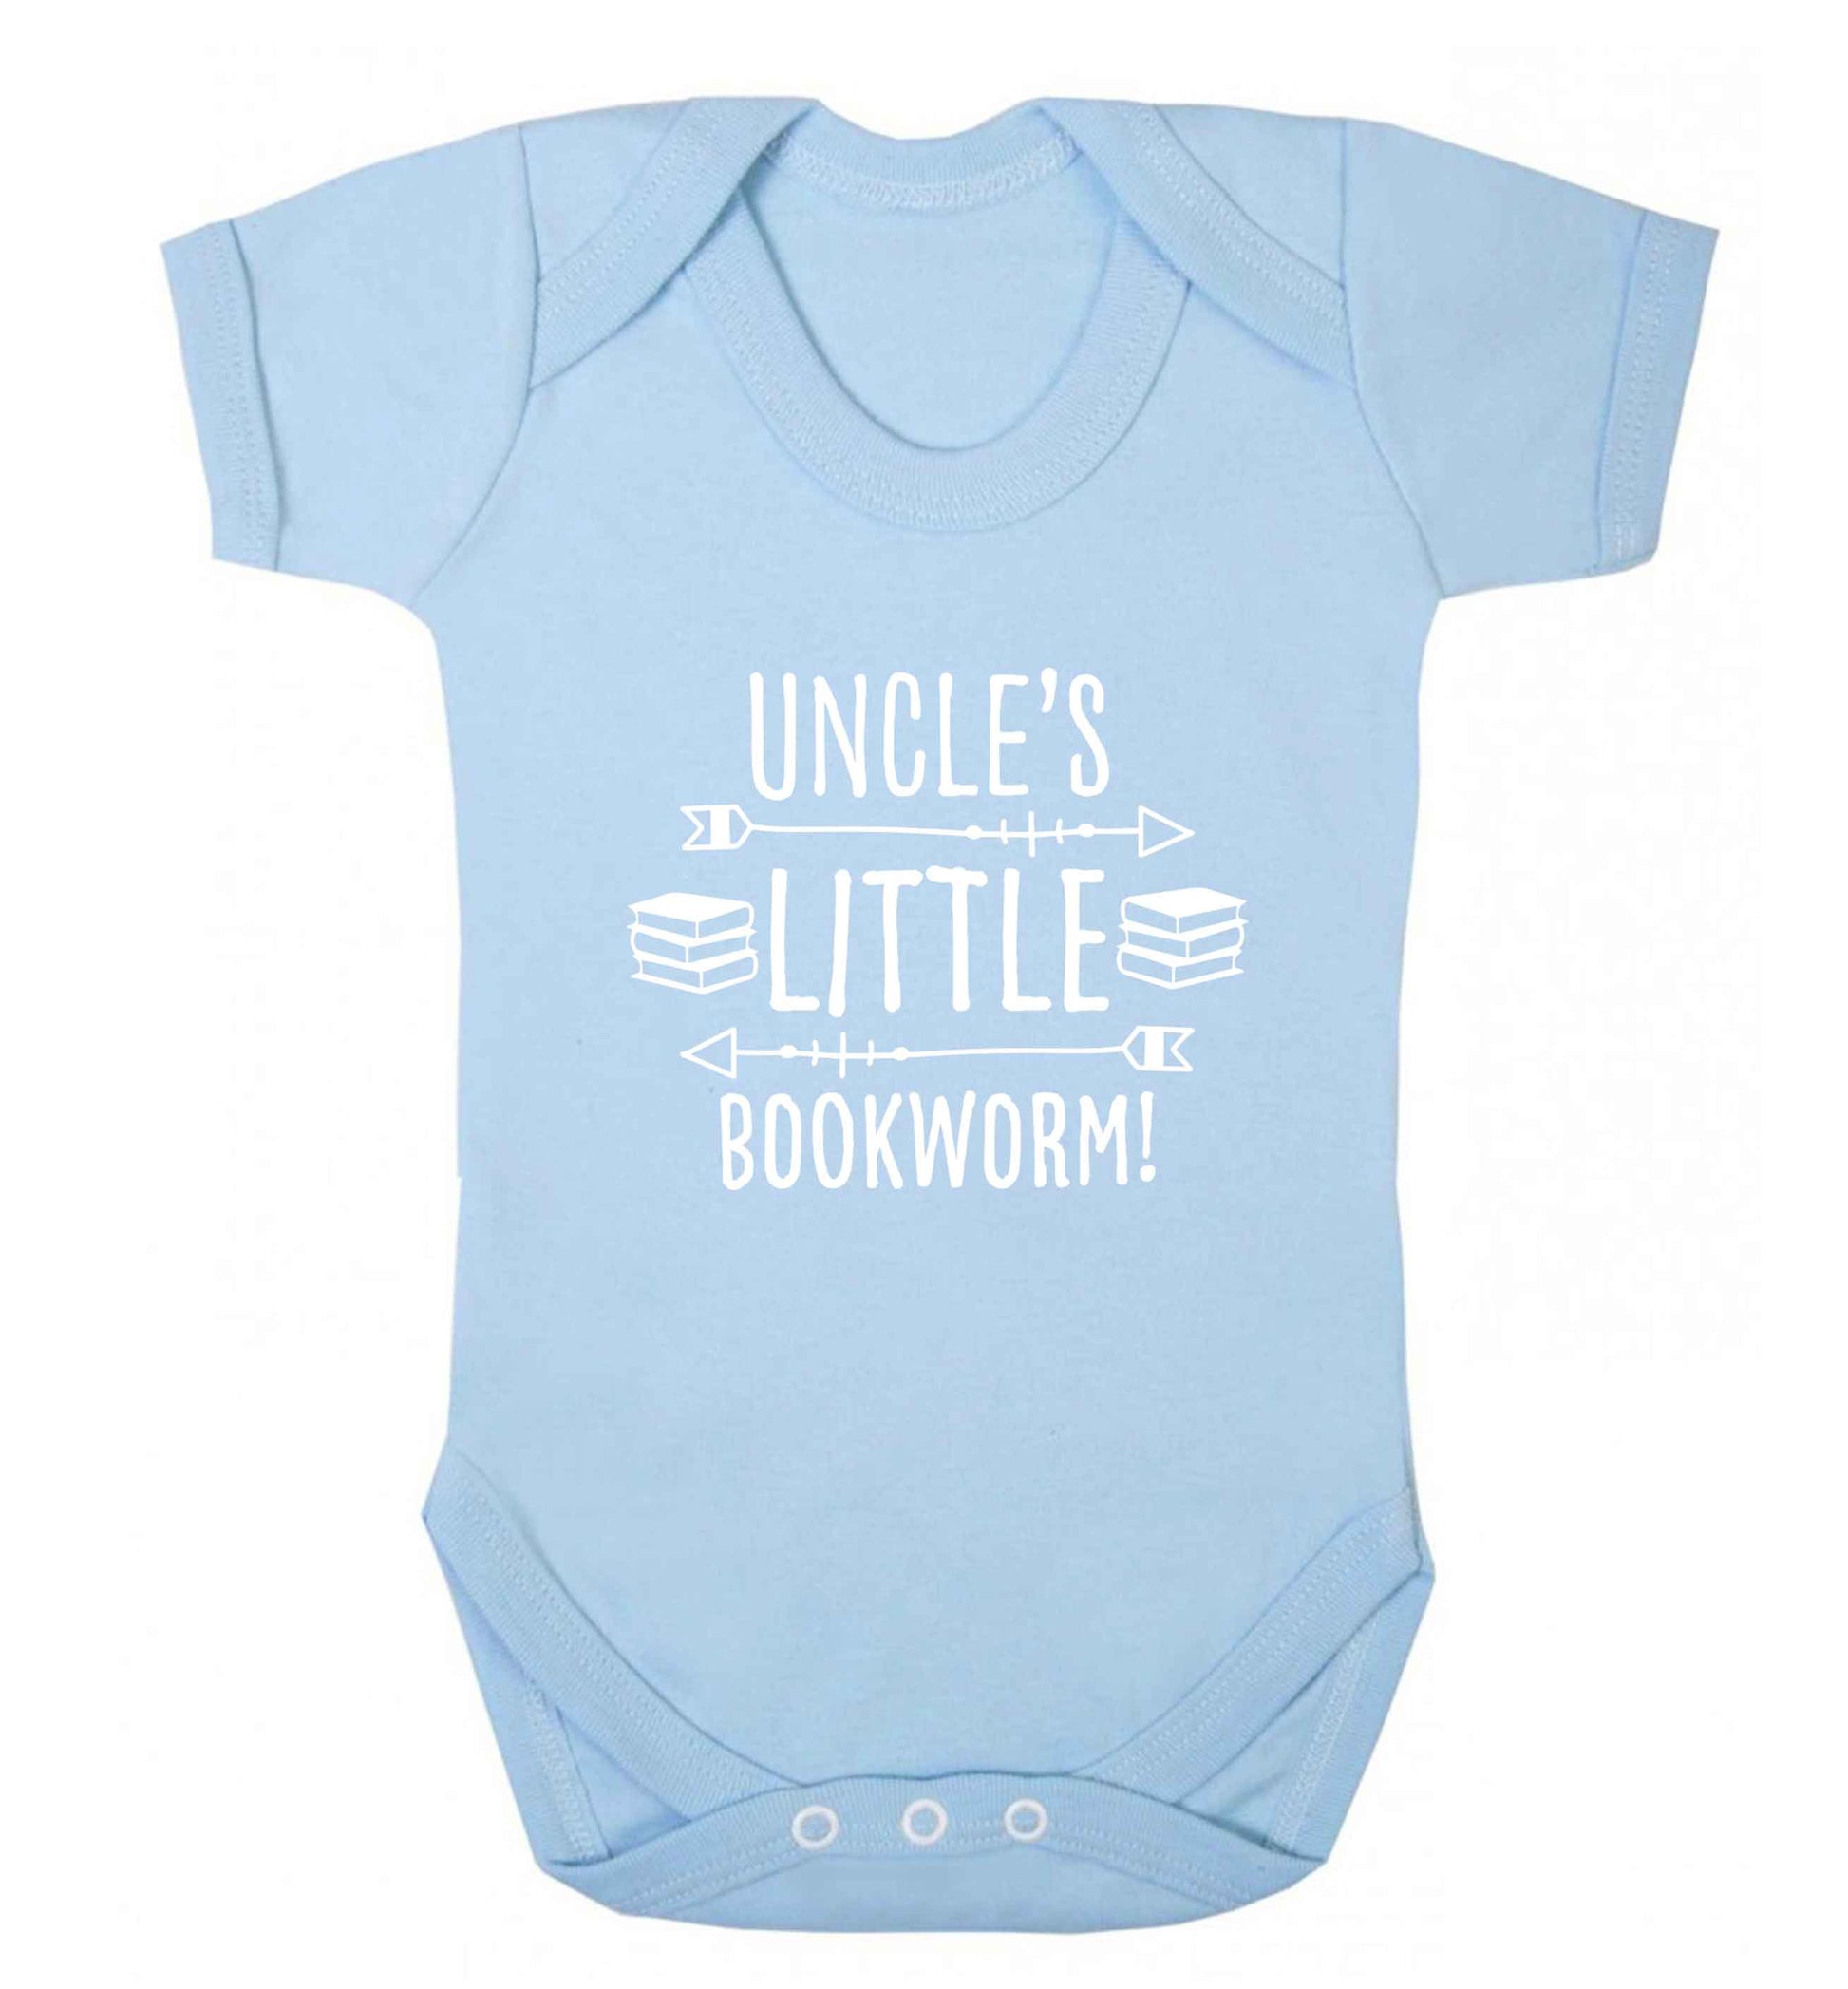 Uncle's little bookworm baby vest pale blue 18-24 months